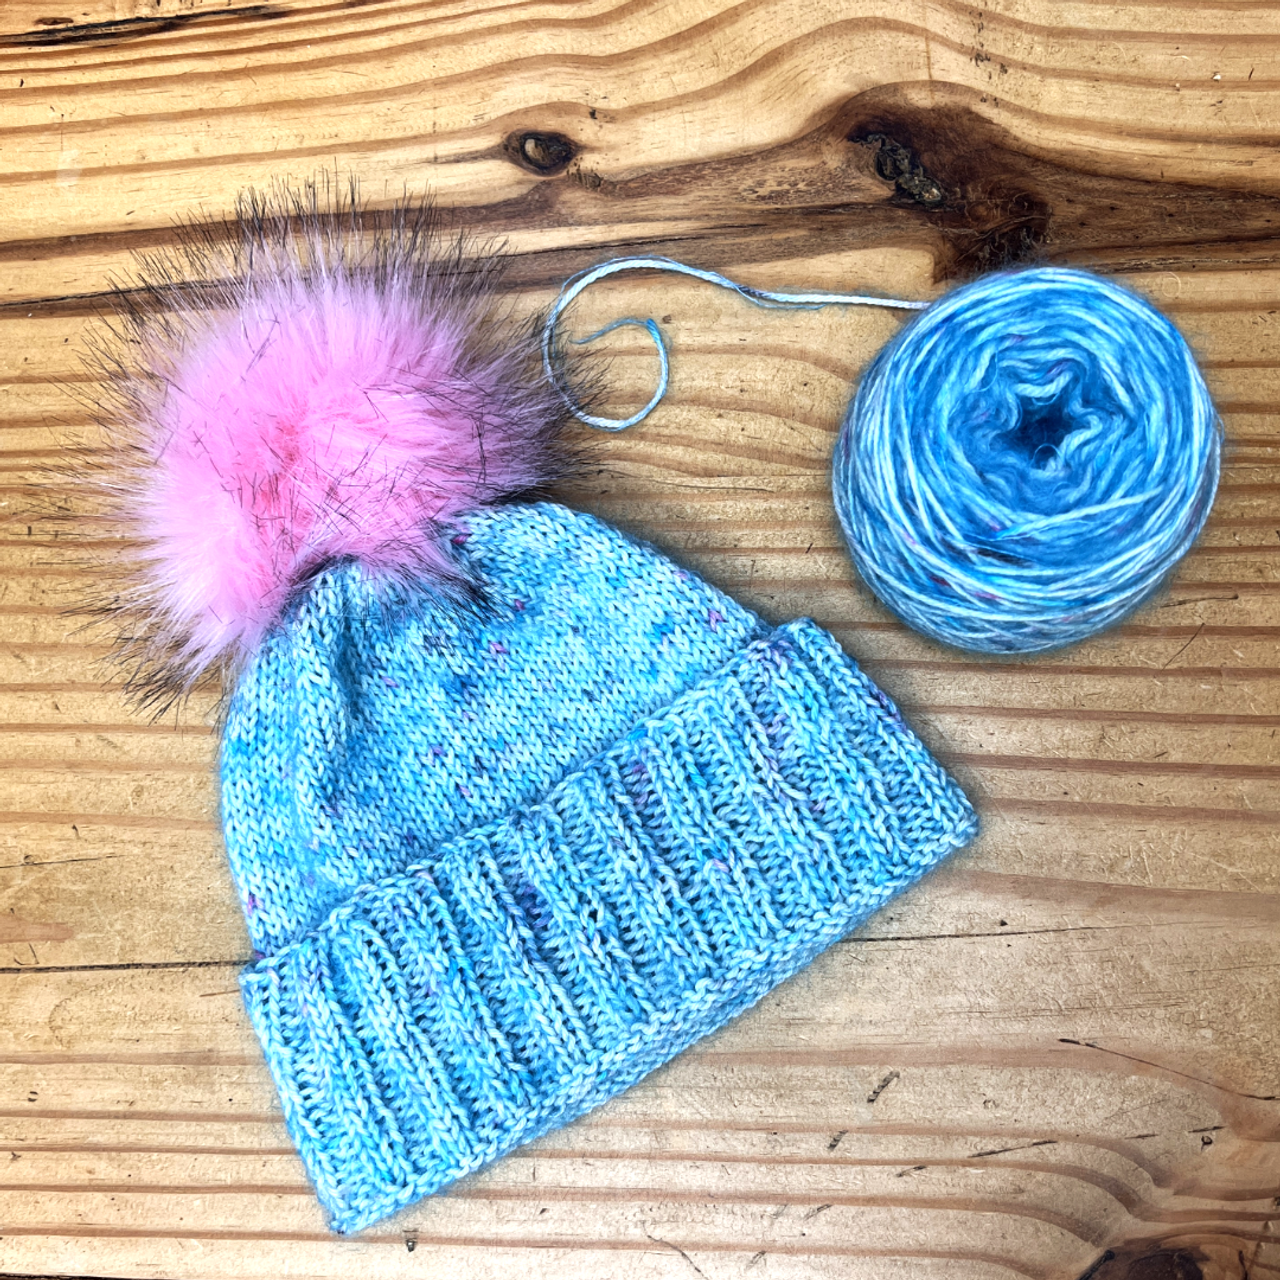 Crochet or Knit Beanie Kit - CeCe's Wool